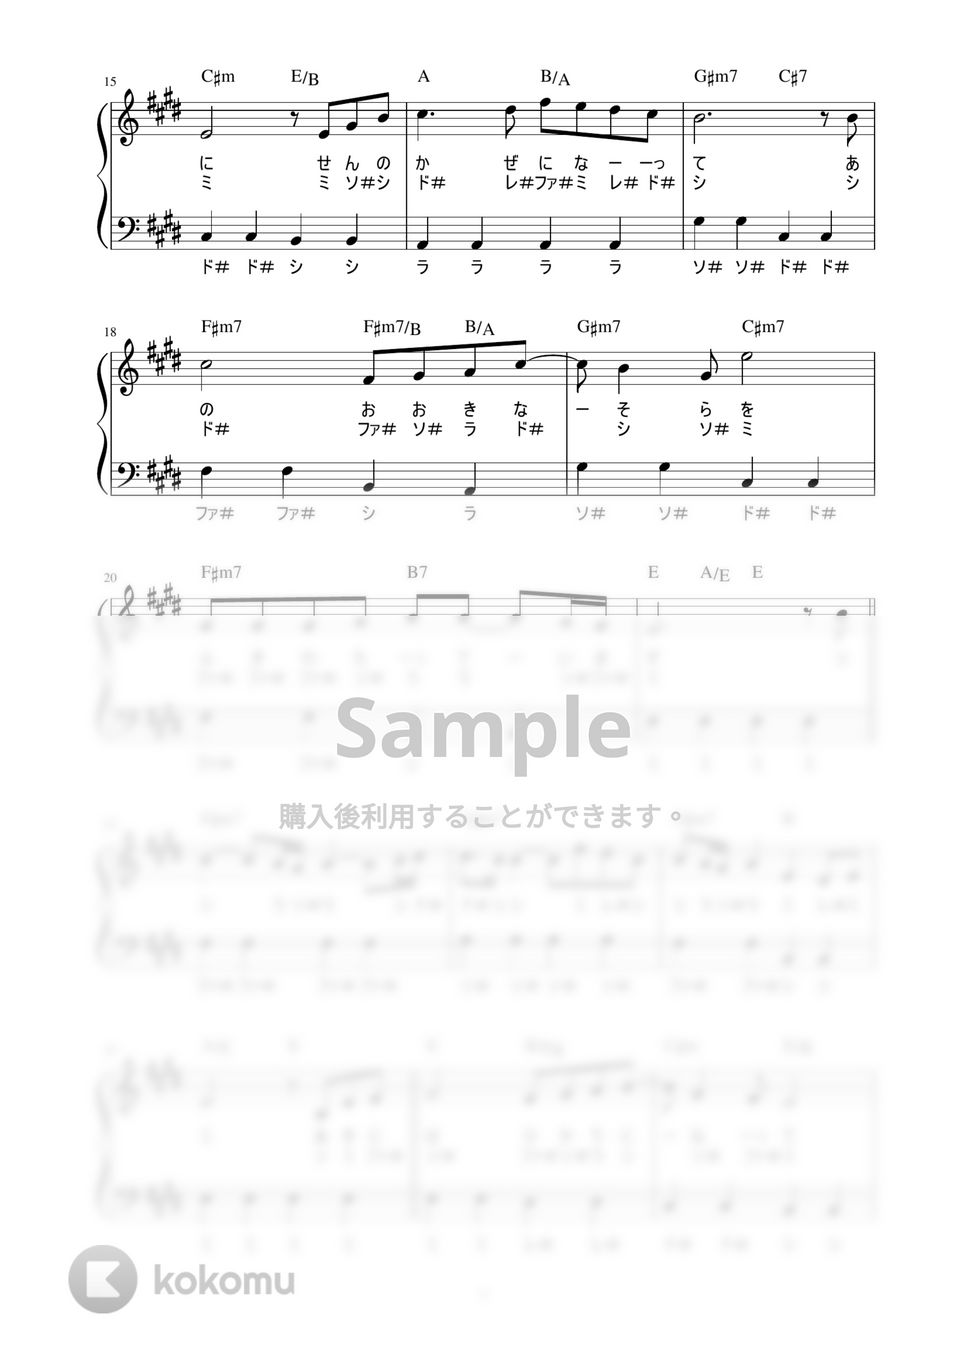 秋川雅史 - 千の風になって (かんたん / 歌詞付き / ドレミ付き / 初心者) by piano.tokyo